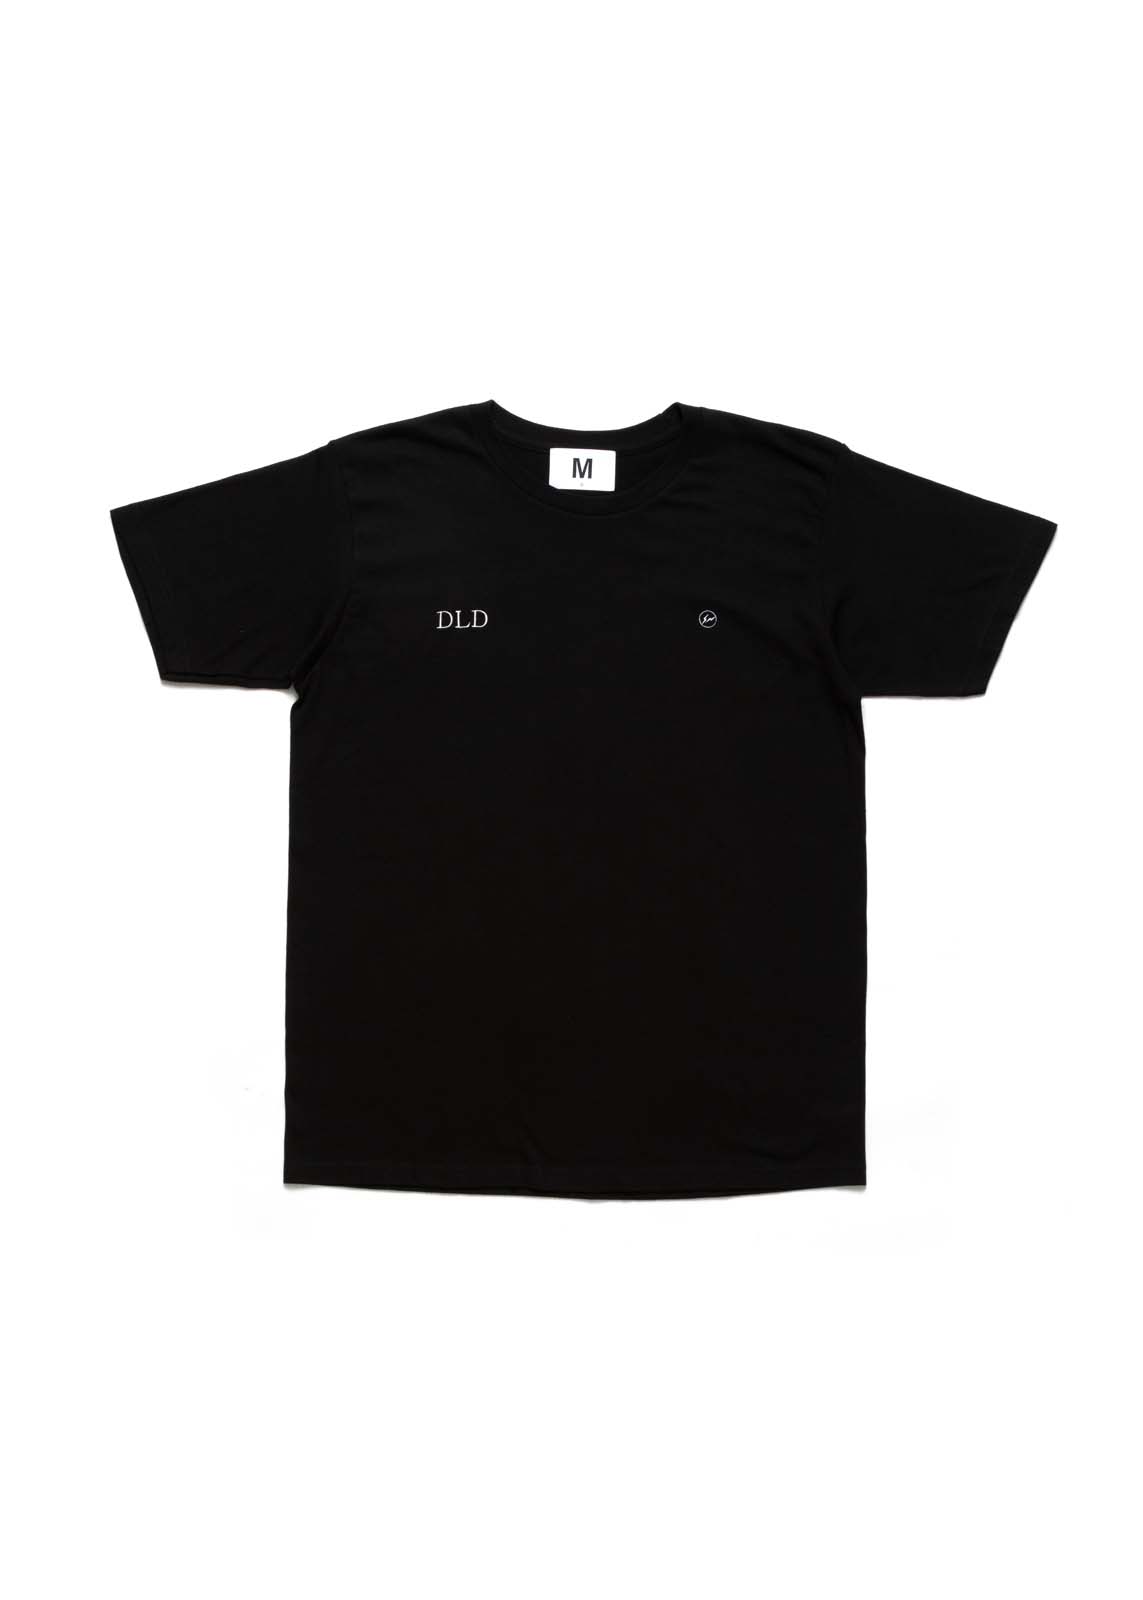 14,740円FRAGMENT × DALIA DEE T-SHIRT 黒 Lサイズ